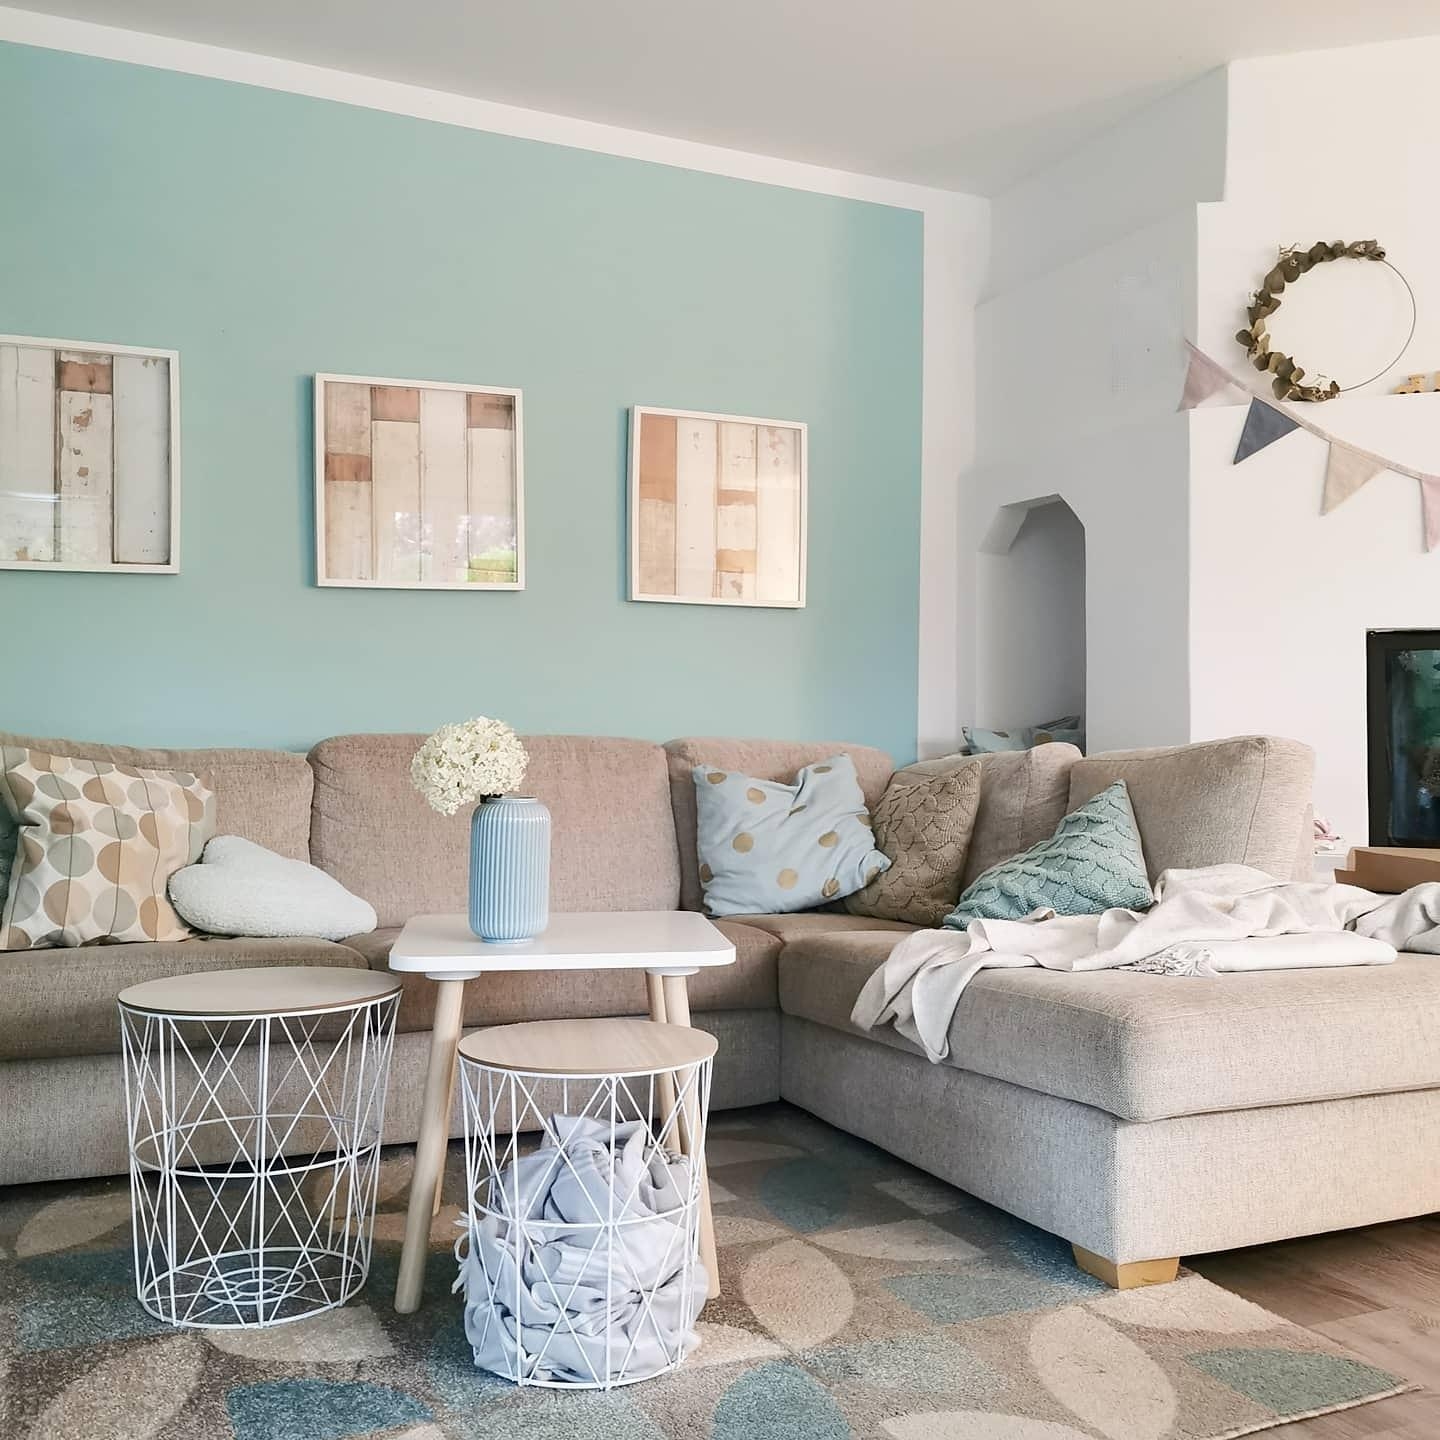 Unser Wohnzimmer im frischen Gletscherblau erhält bald ein Makeover... #couchstyle #interior #pastell #Wohnzimmer